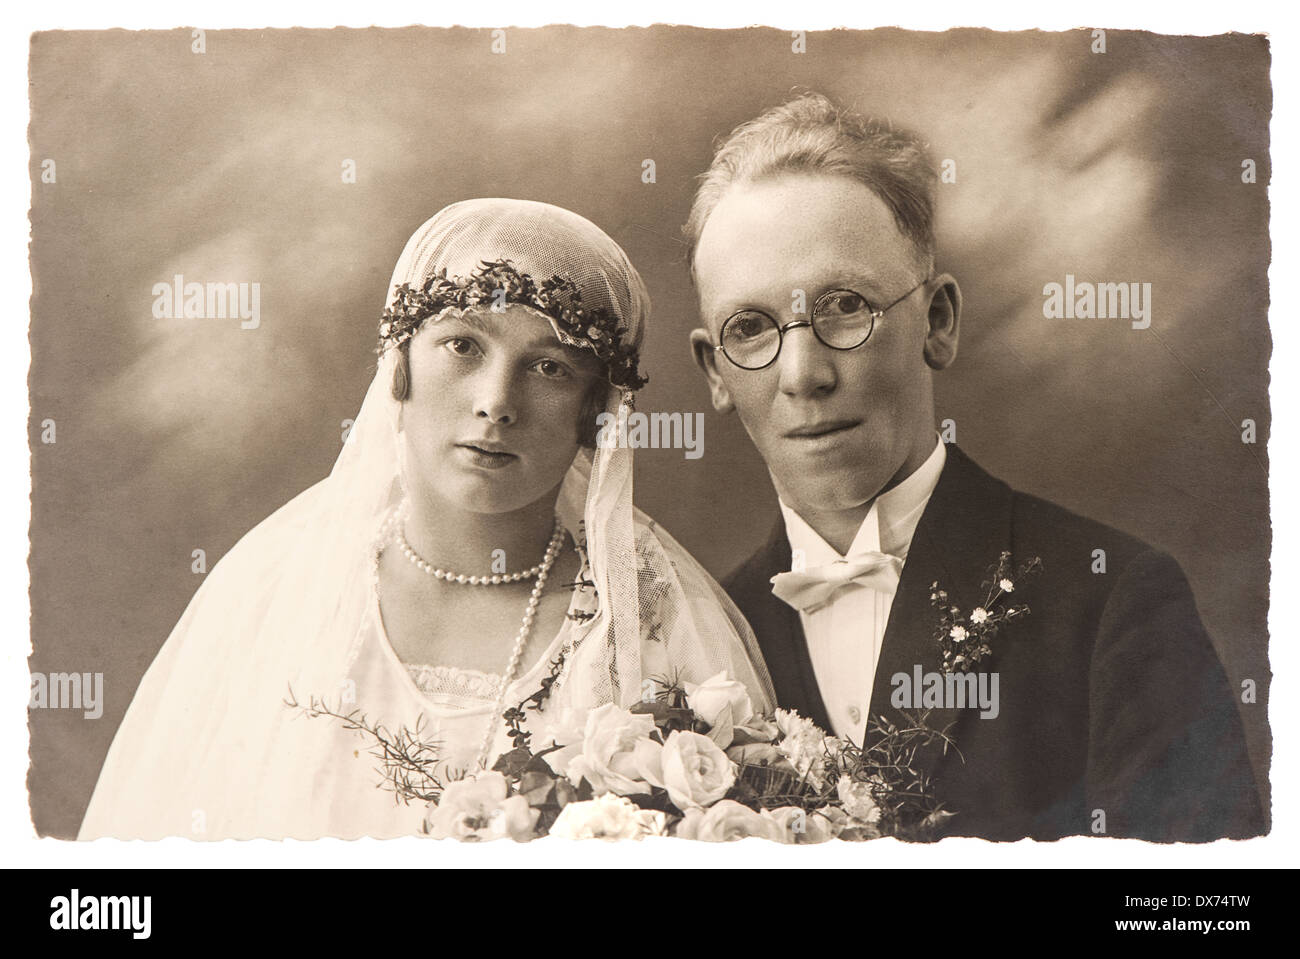 Berlino, Germania - circa 1920: originali antichi wedding photo. ritratto di appena una coppia sposata. immagine nostalgica, circa 1920 Foto Stock